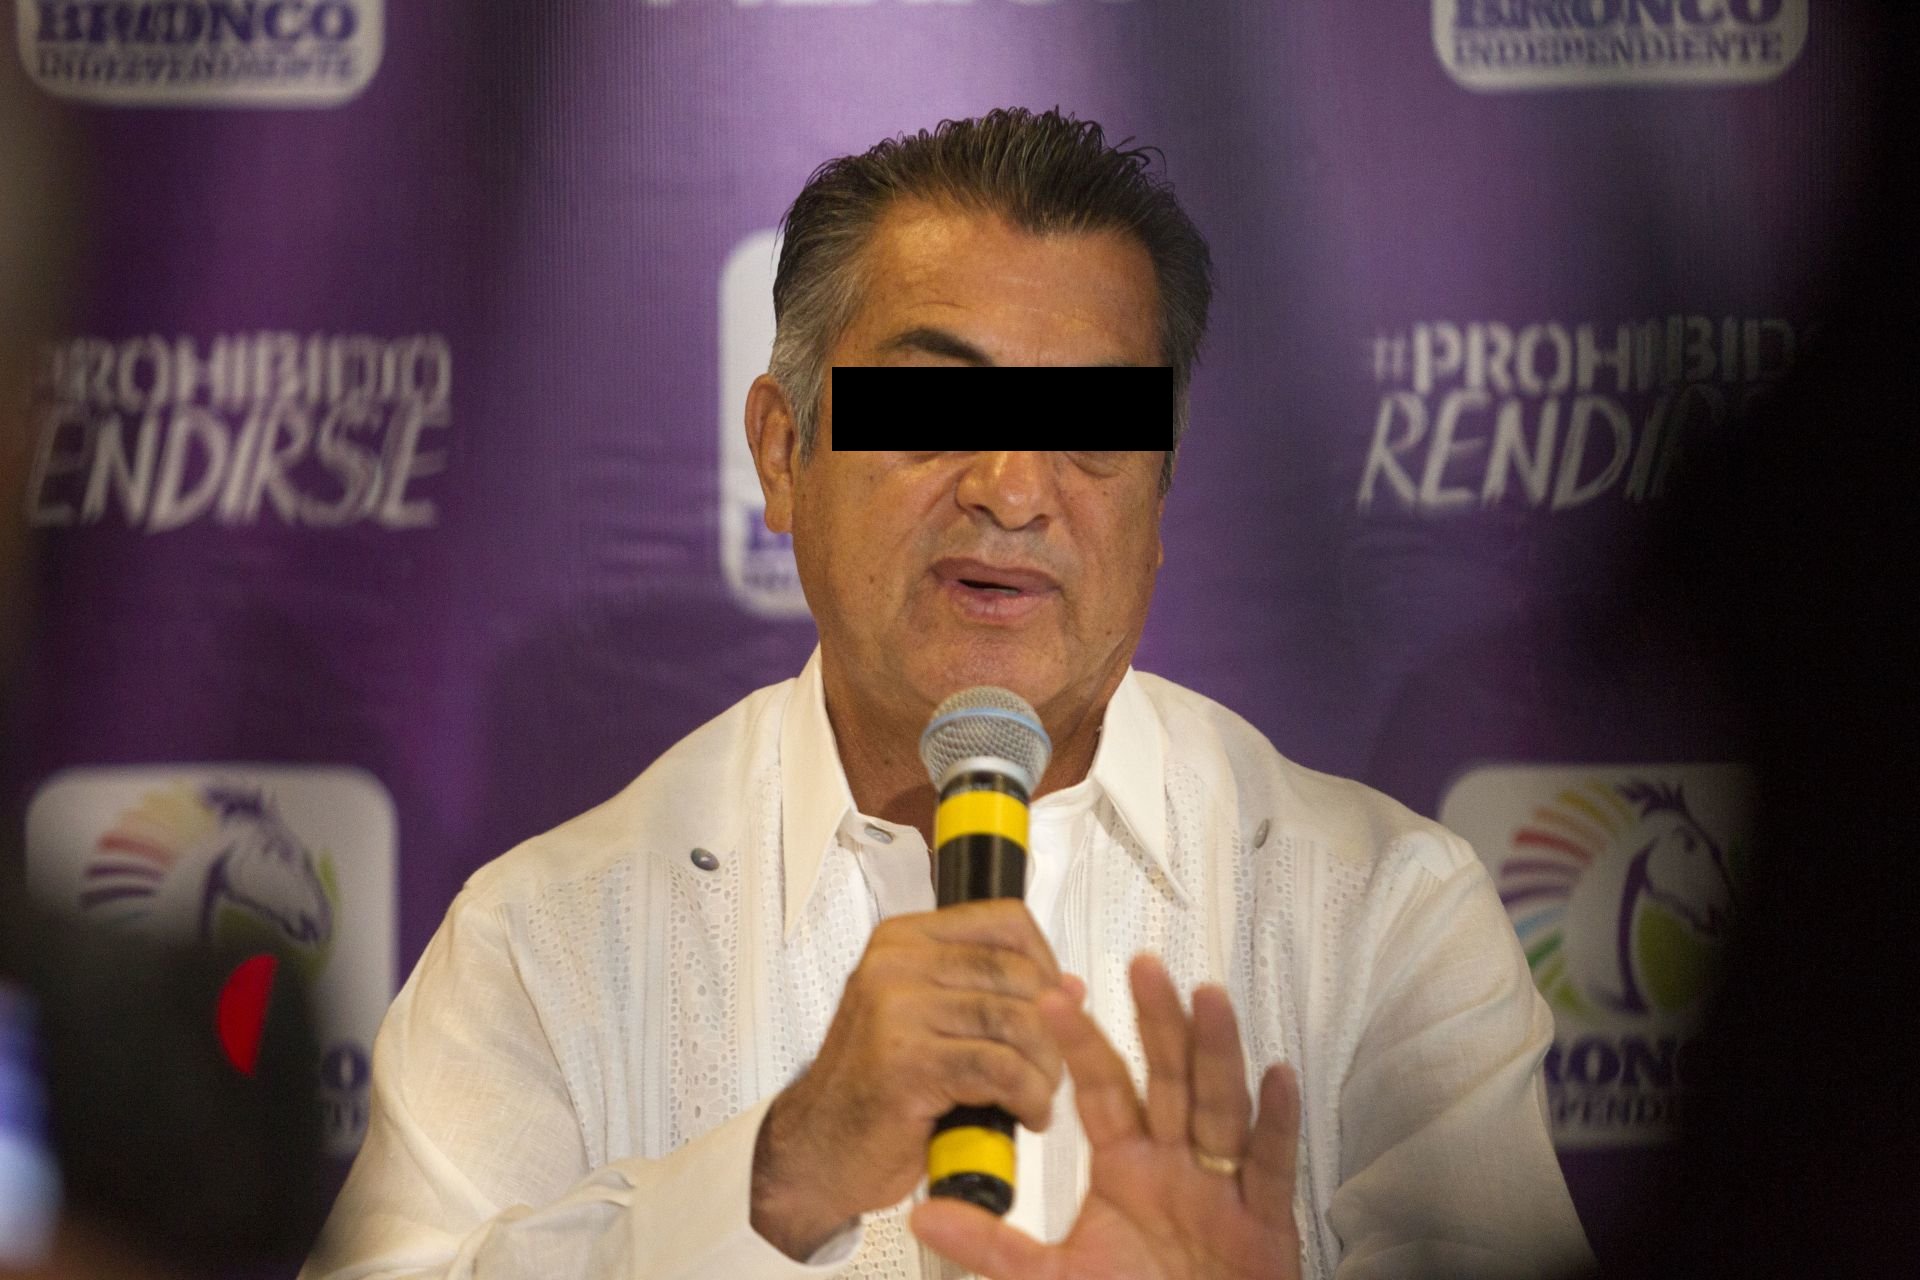 Jaime Rodríguez “El Bronco” anunció que será operado de emergencia